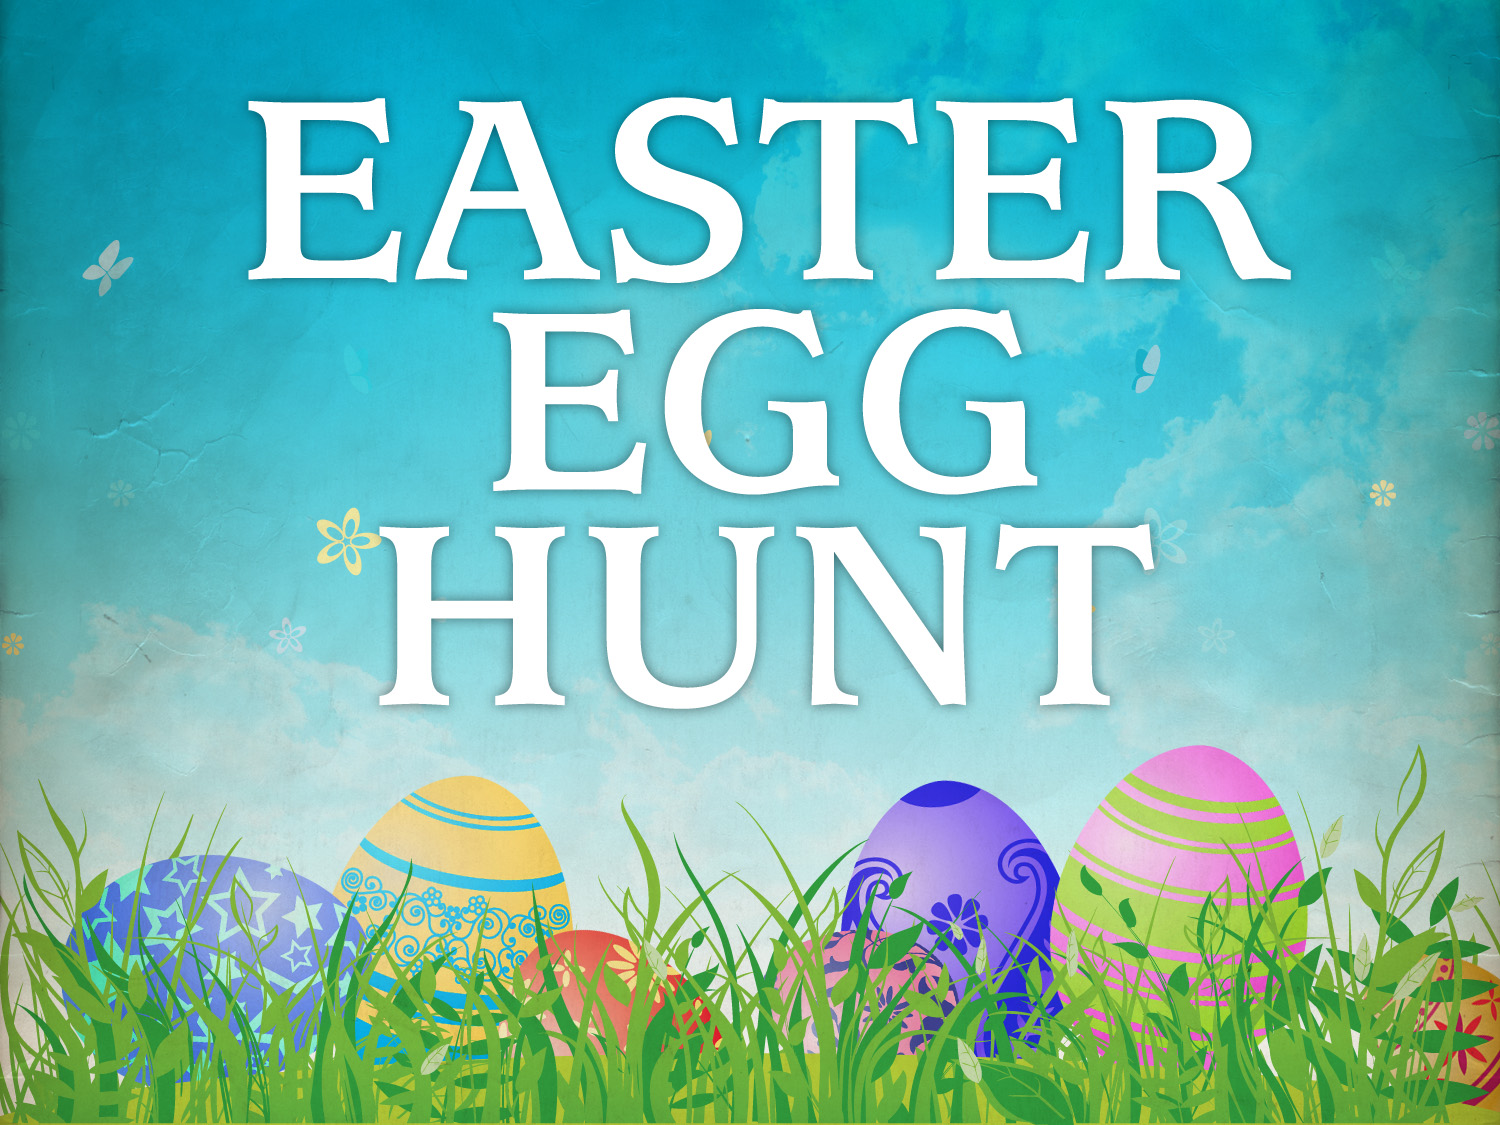 2013 Hawaii Easter Egg Hunts